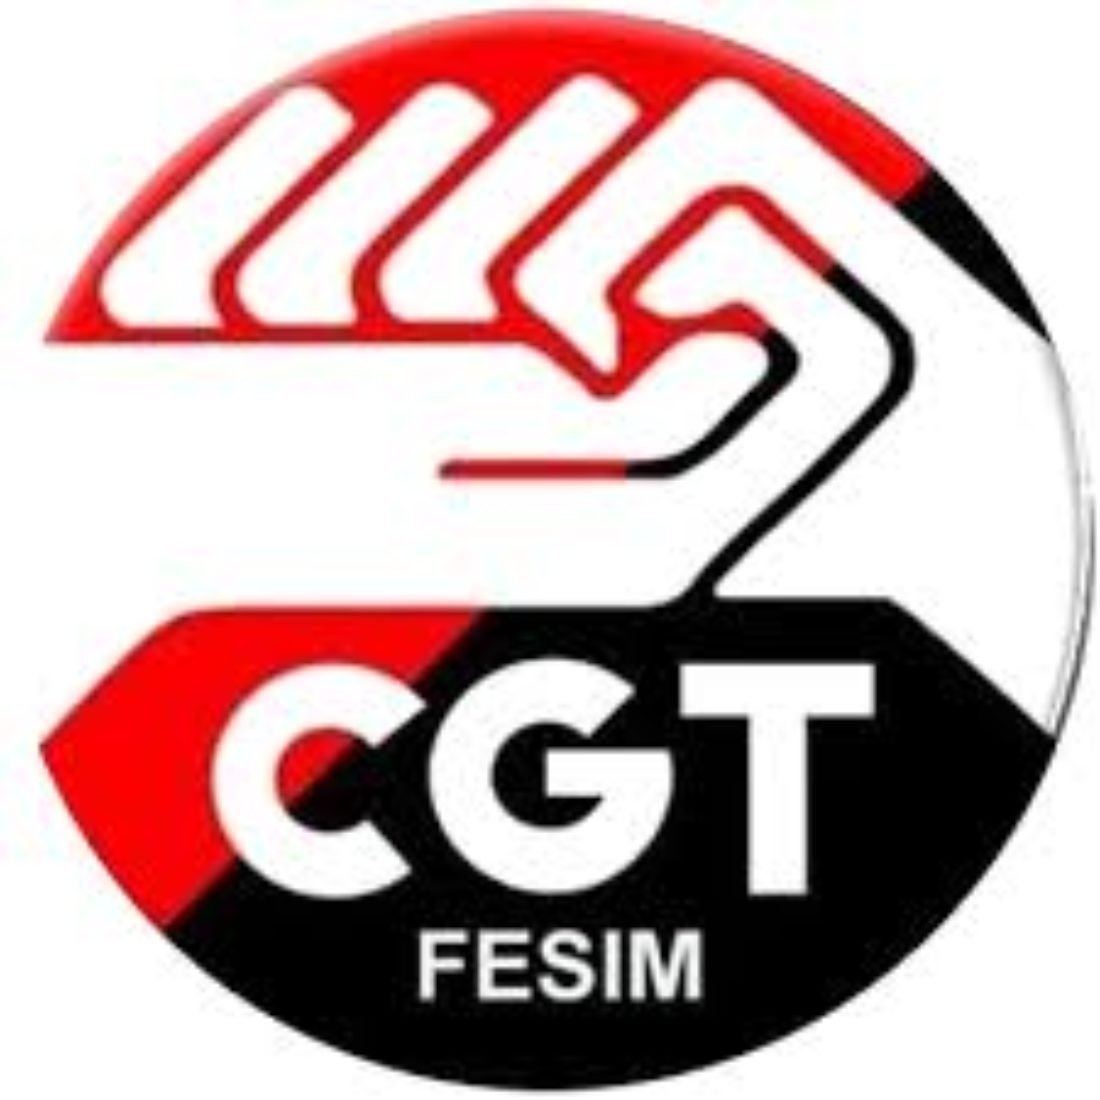 Elegido el nuevo Secretariado Permanente de la Federación Metalúrgica de la CGT